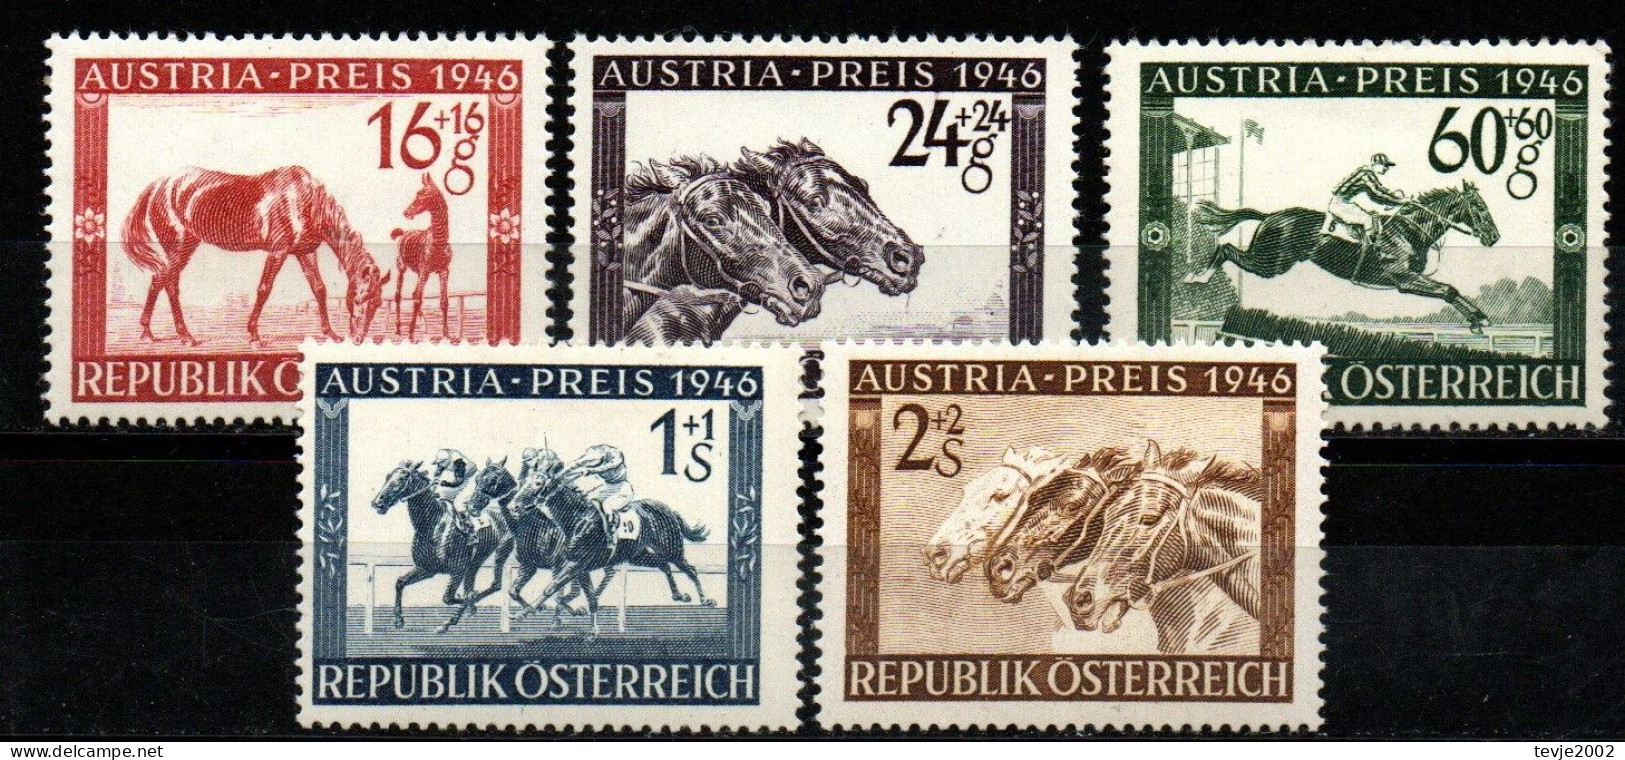 Österreich 1946 - Mi.Nr. 785 - 789 - Postfrisch MNH - Tiere Animals Pferde Horses Sport Reiten Riding - Paardensport